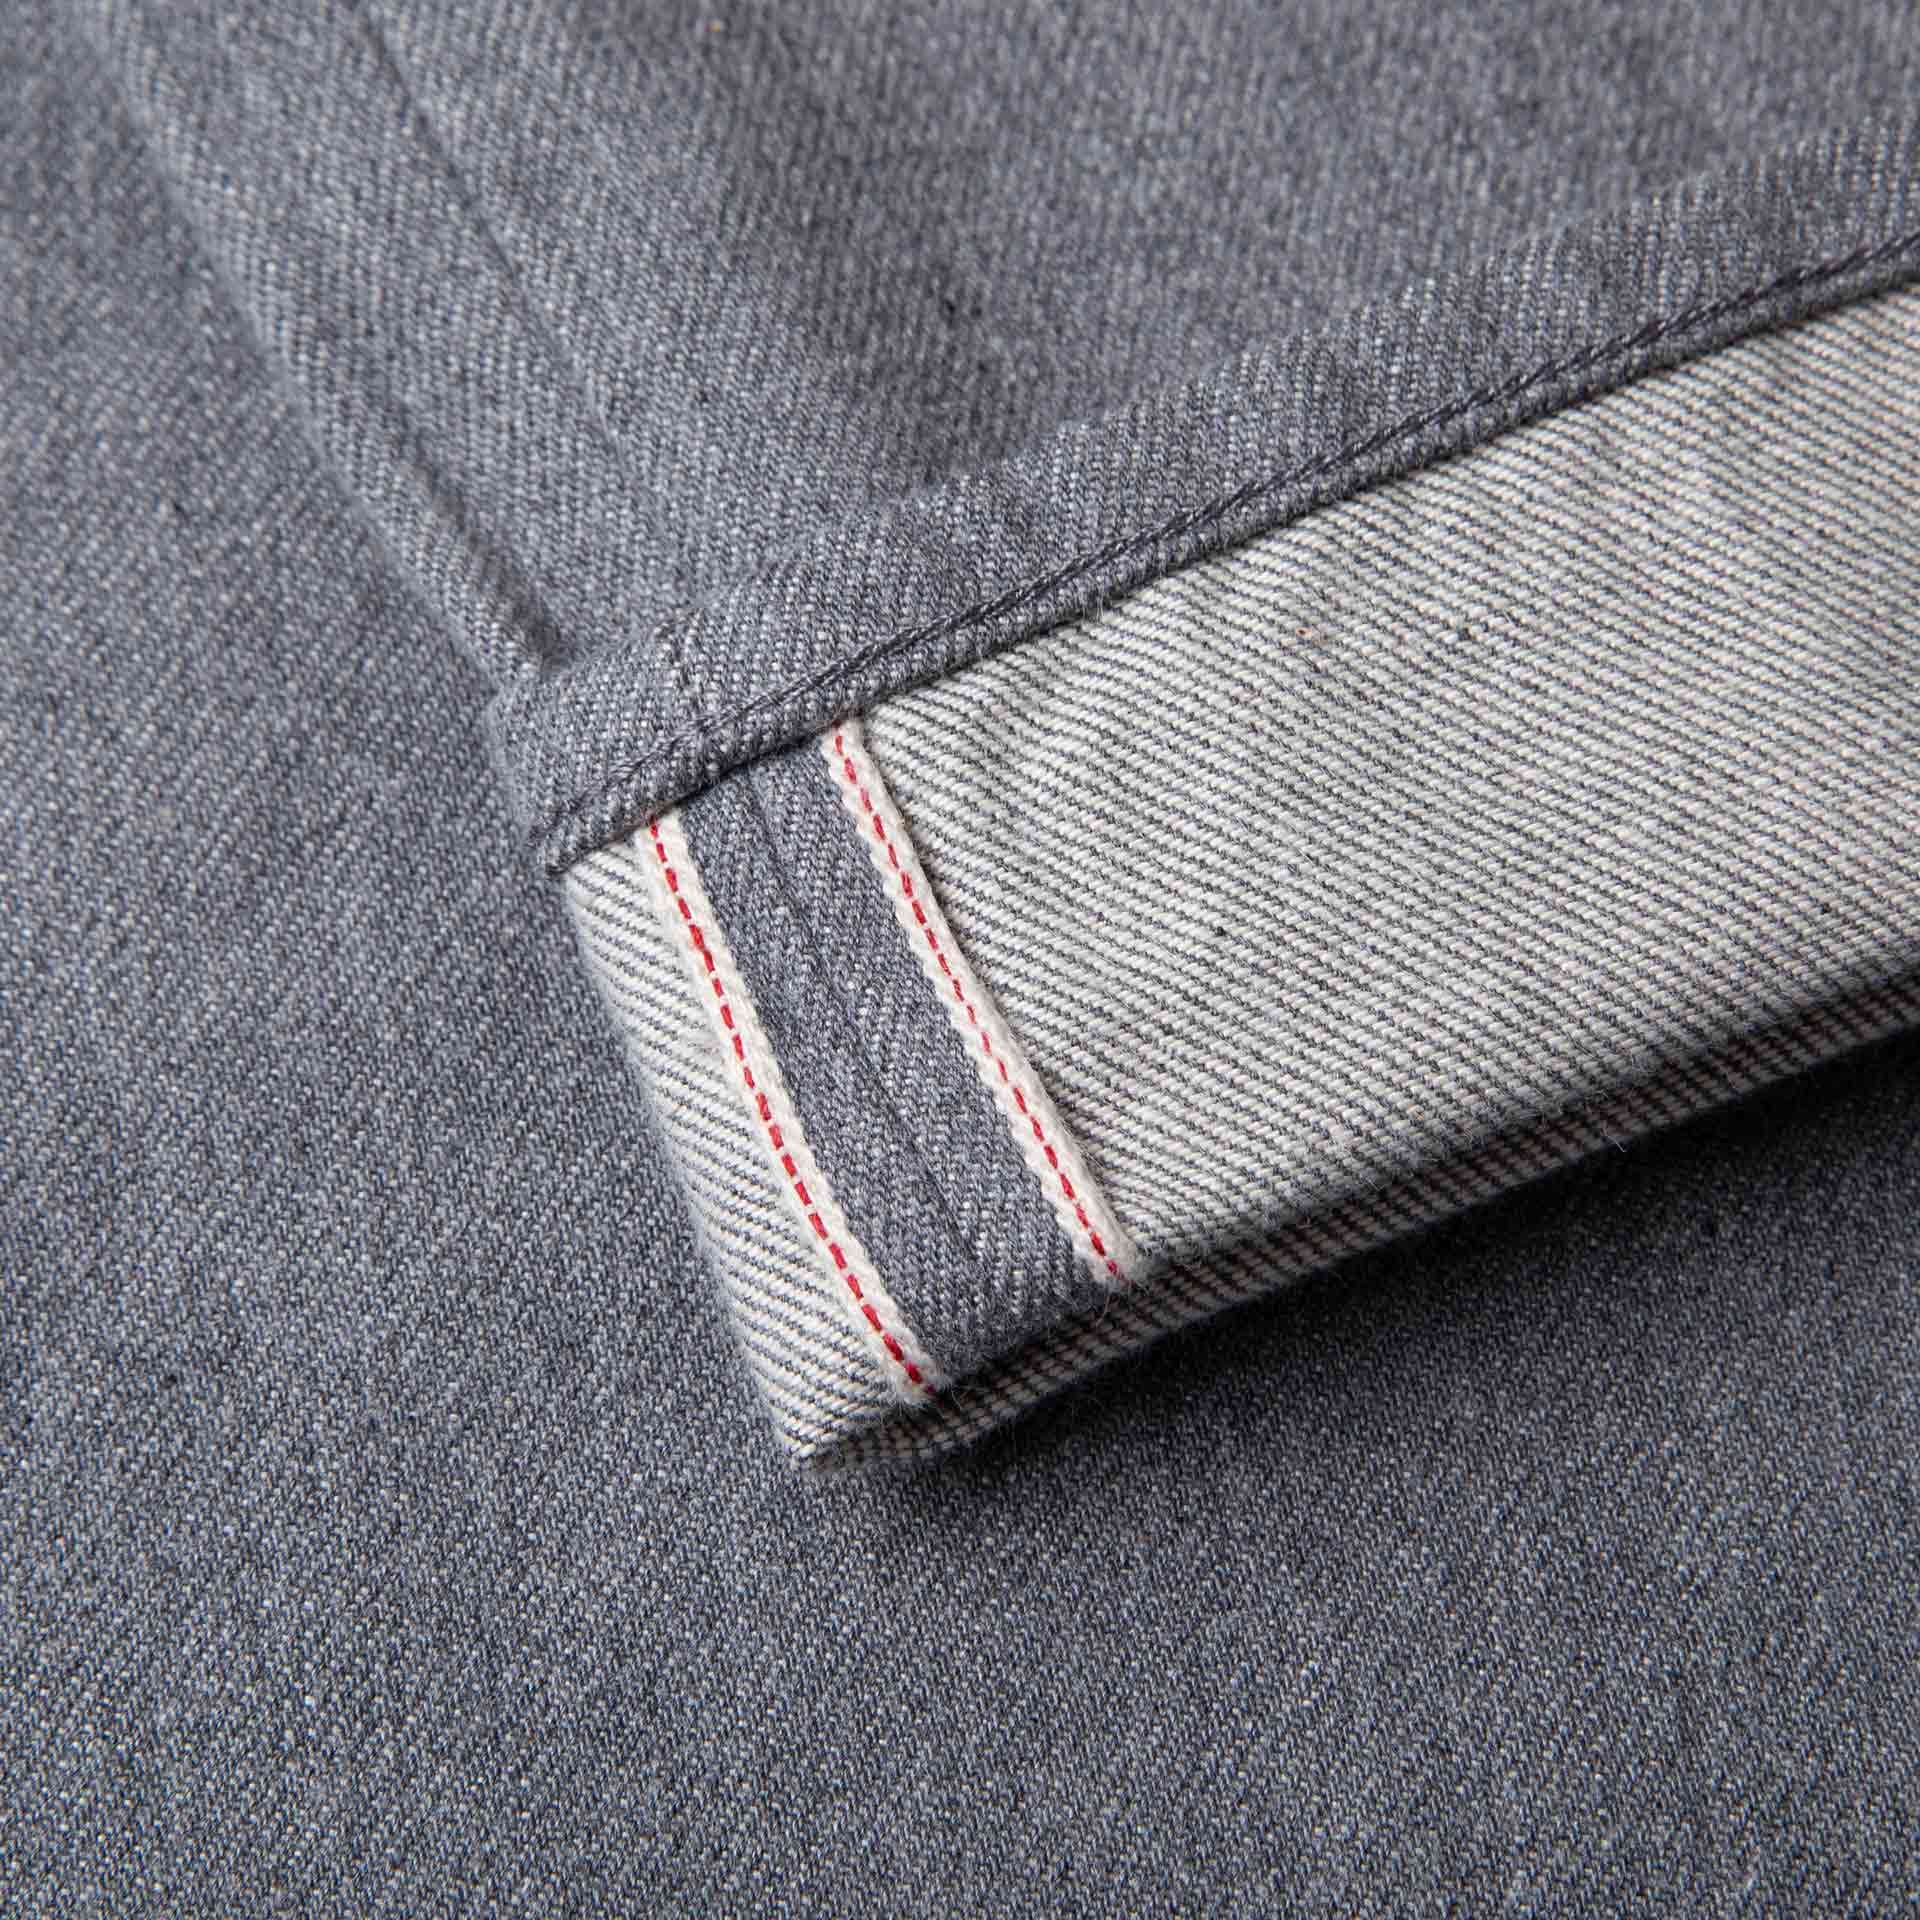 Amazon.com: 1 Yard of Black Gray Denim Fabric B-1 Cotton 60